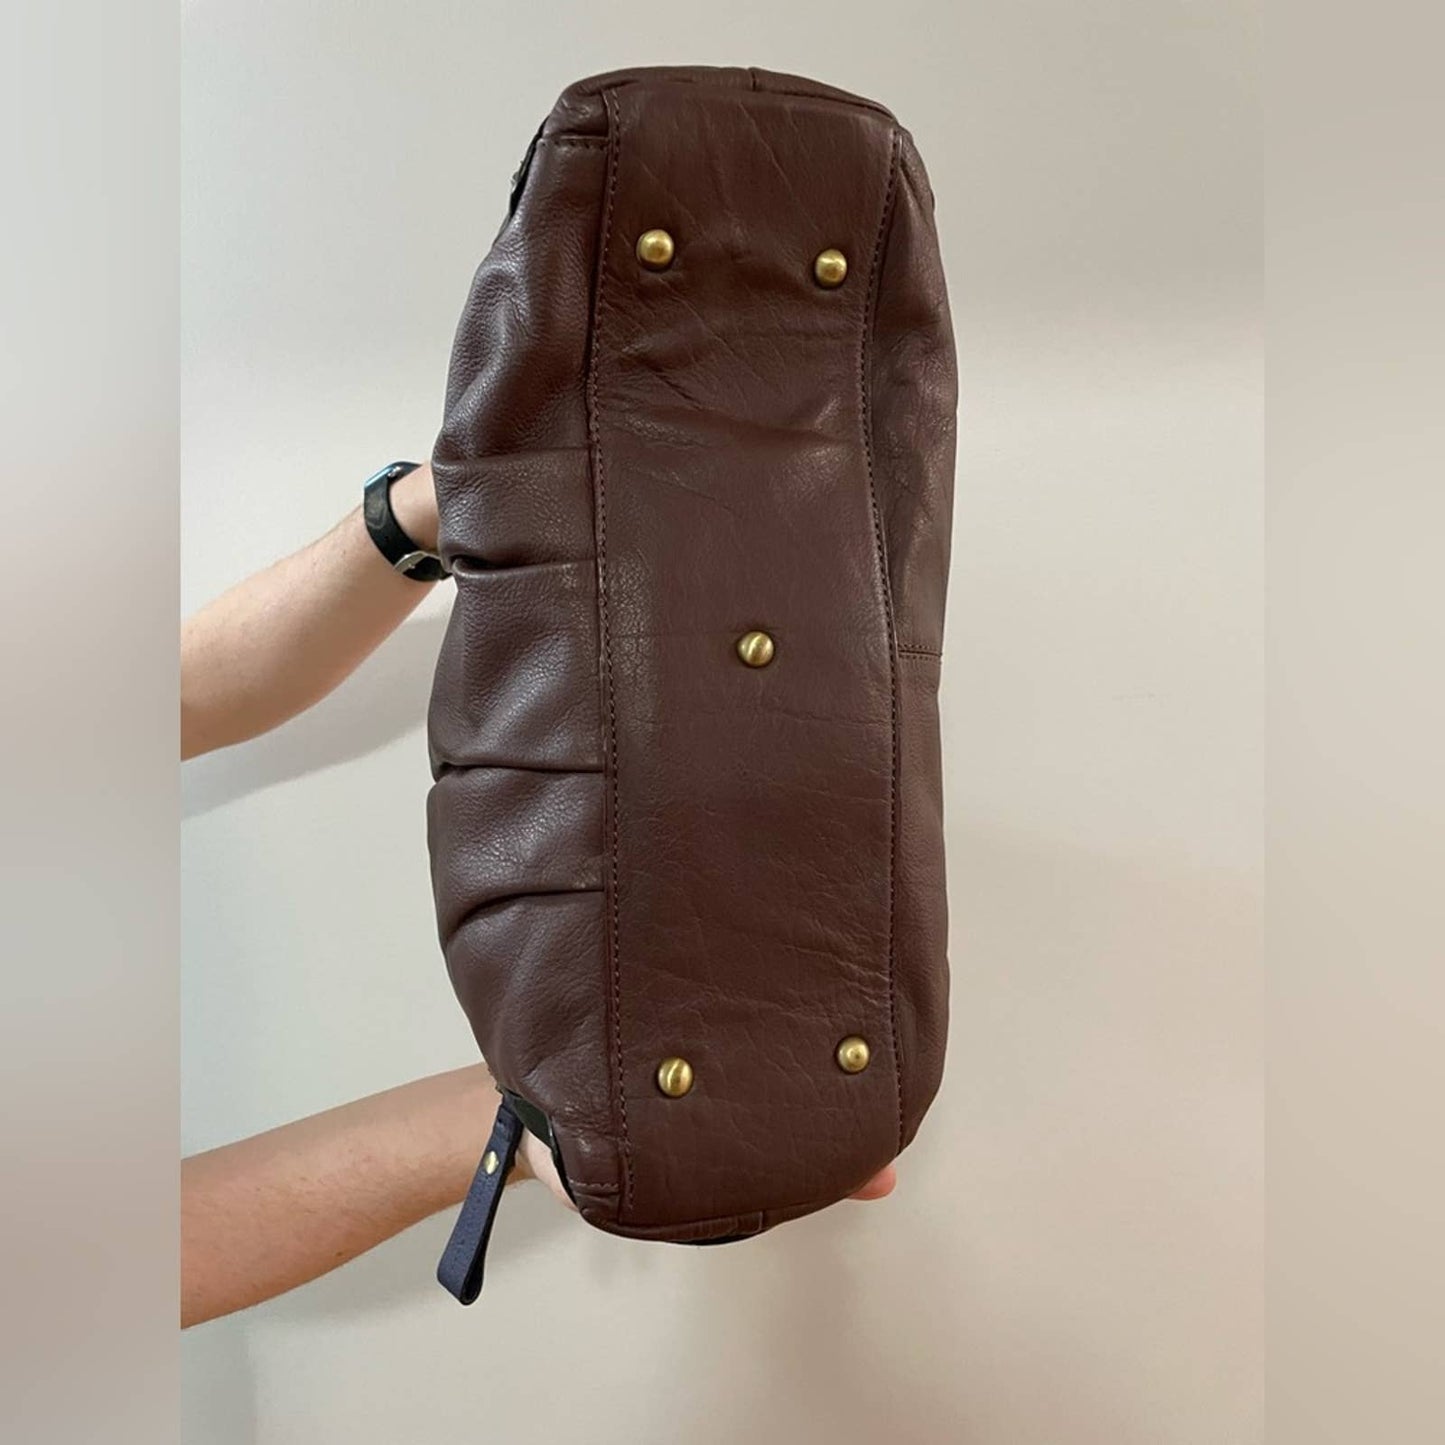 Oryany Full Leather Color Block Shoulder Bag